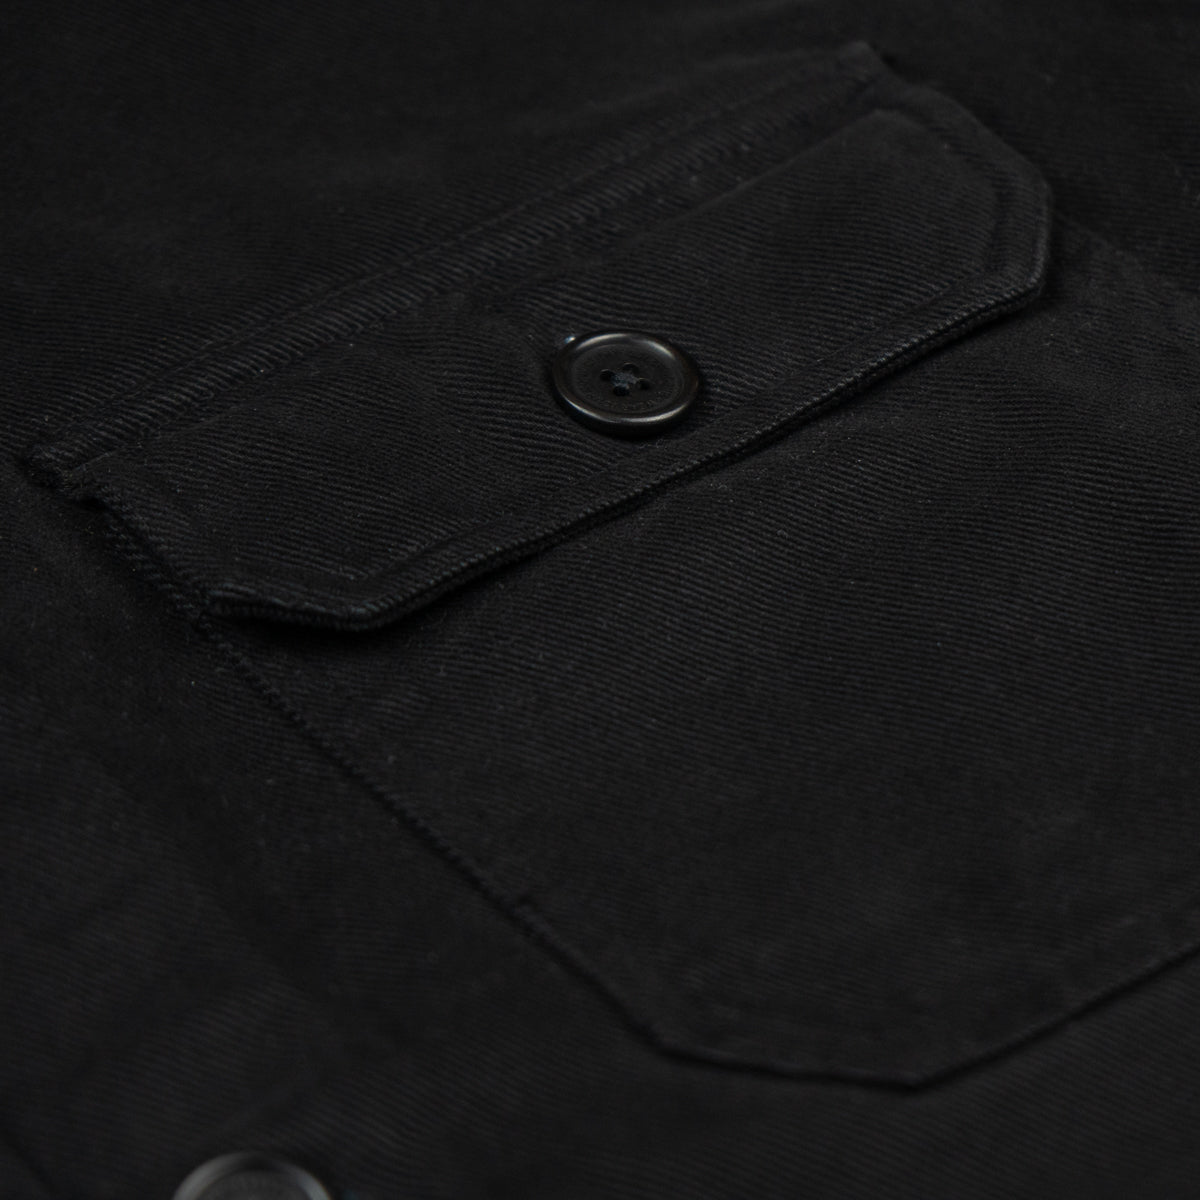 Brusttasche mit Corozo Knopf an schwarzer Hemdjacke